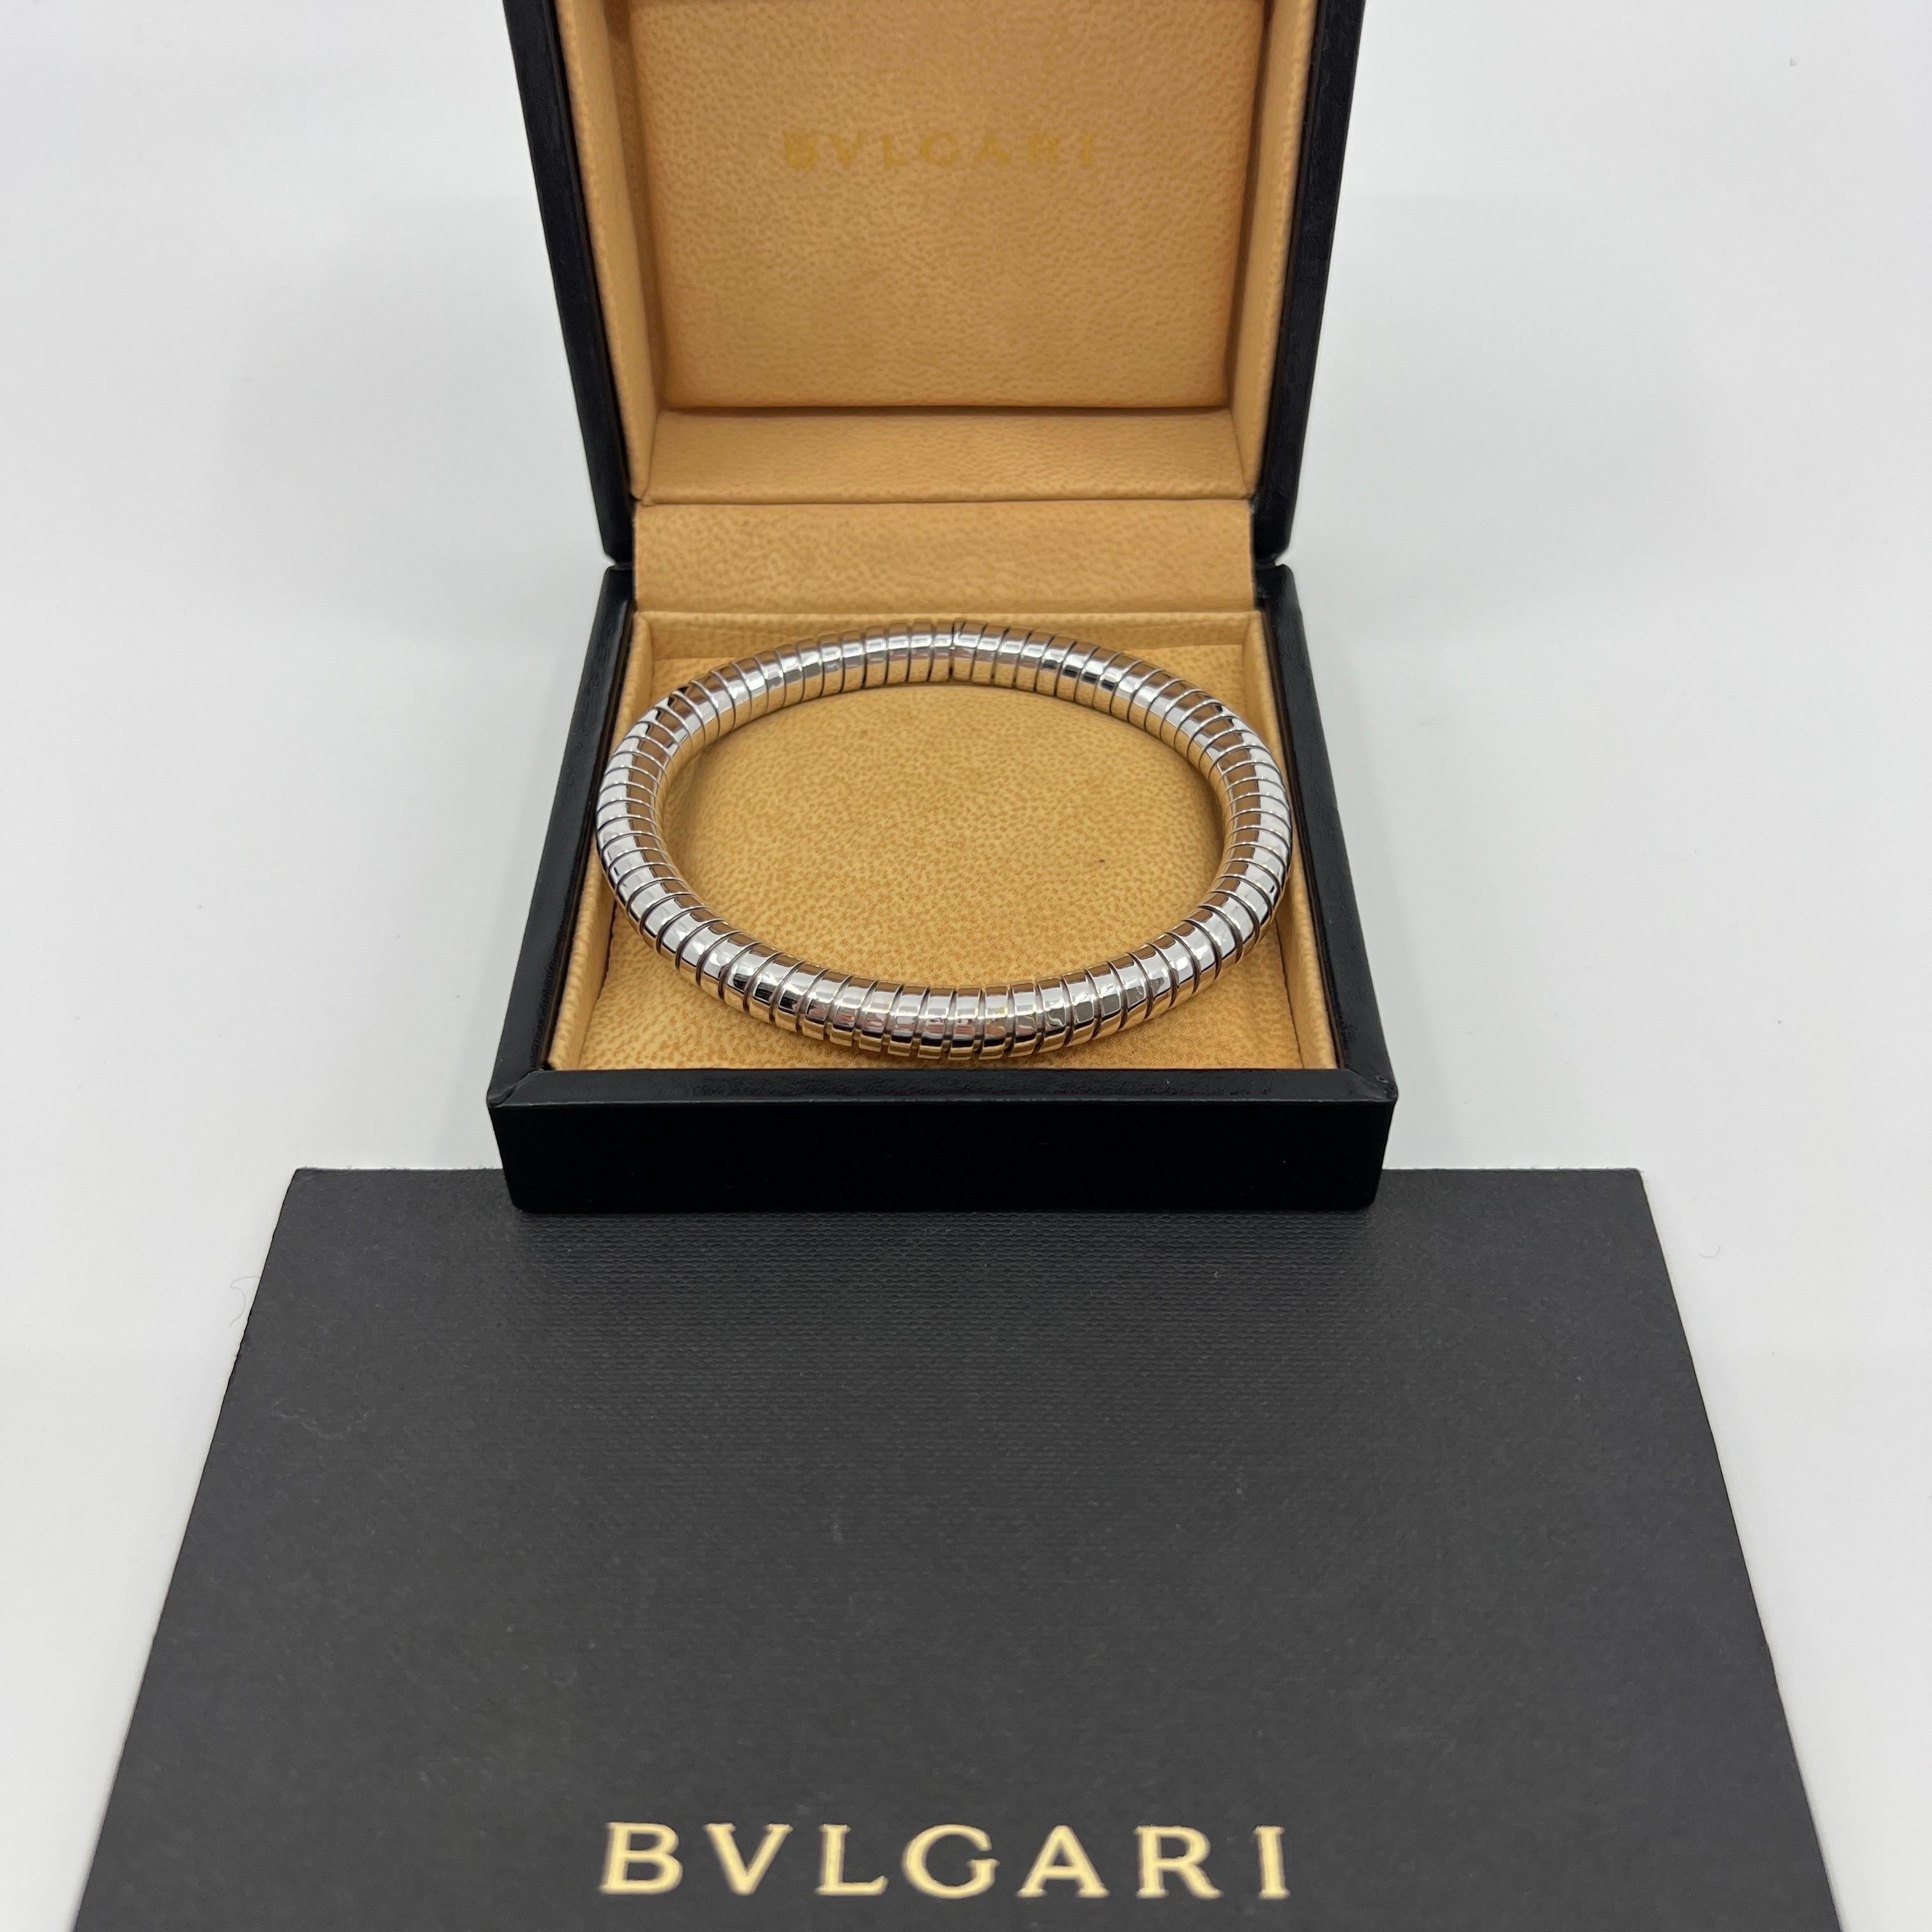 Très Rare Vintage Bvlgari Tubogas 18k White Gold Bracelet Bangle

Superbe bracelet Bvlgari avec le style signature Tubogas Parentesi. Les origines de la collection Serpenti de Bvlgari.
Ce bracelet a un corps flexible en or blanc massif (y compris le